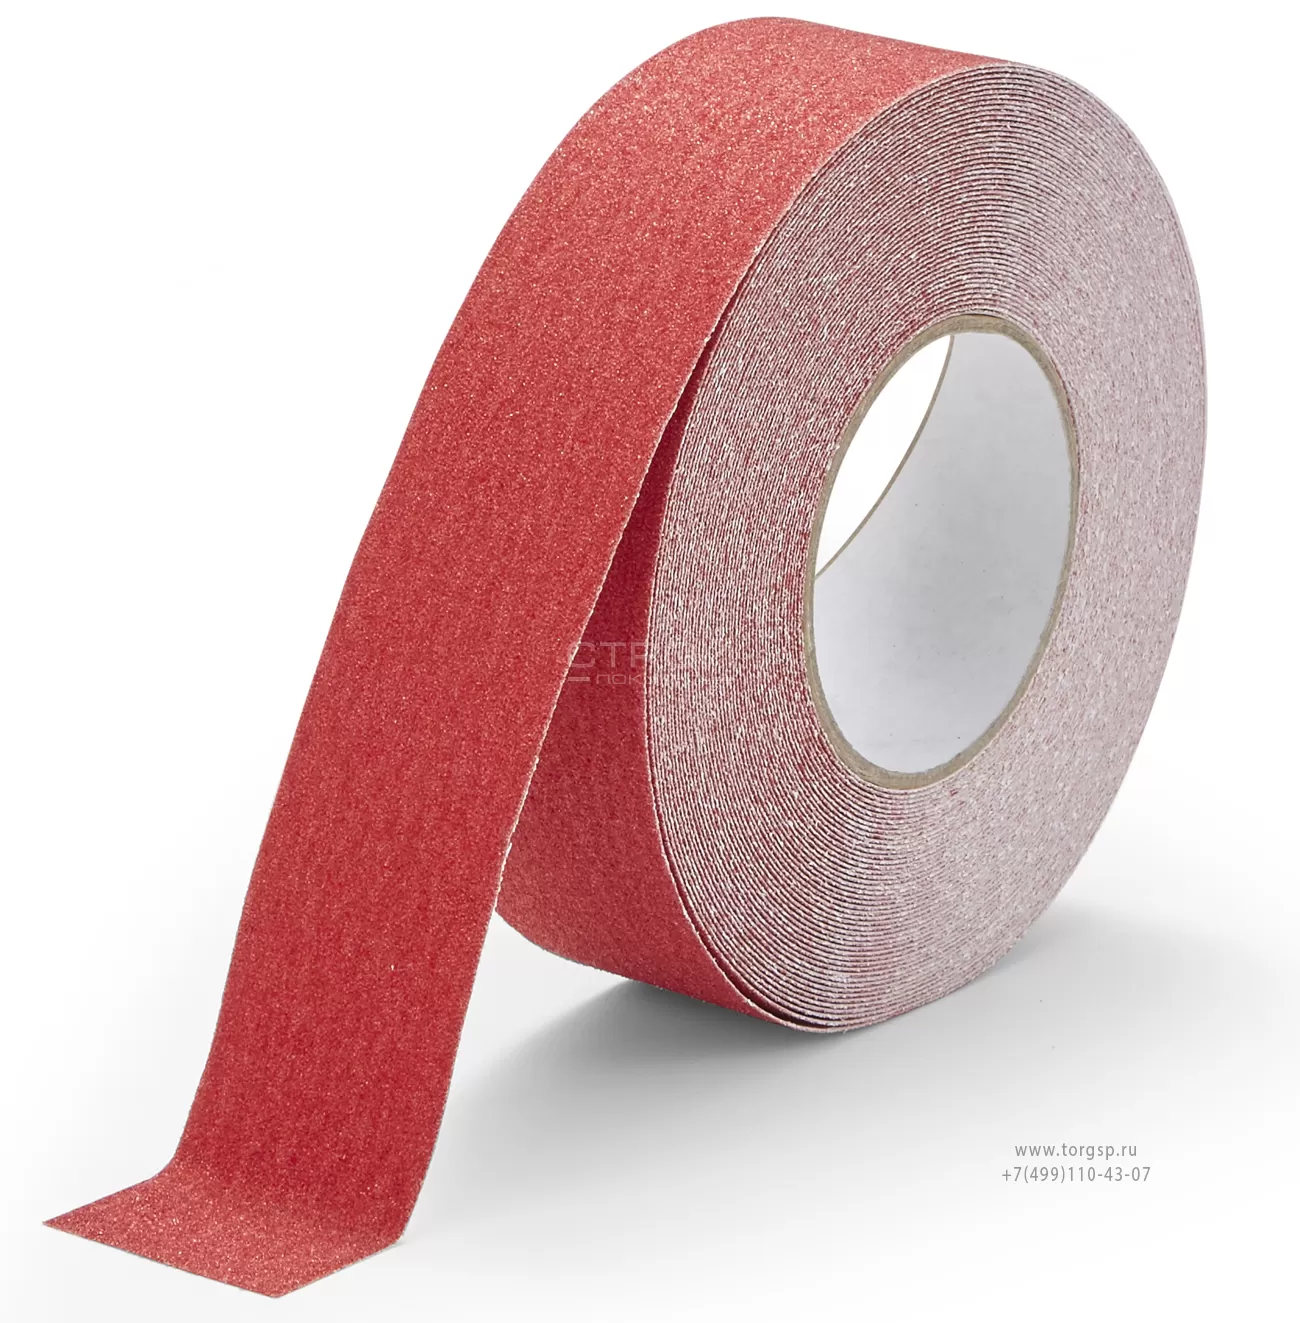 Красная абразивная противоскользящая лента Heskins шириной 5 см